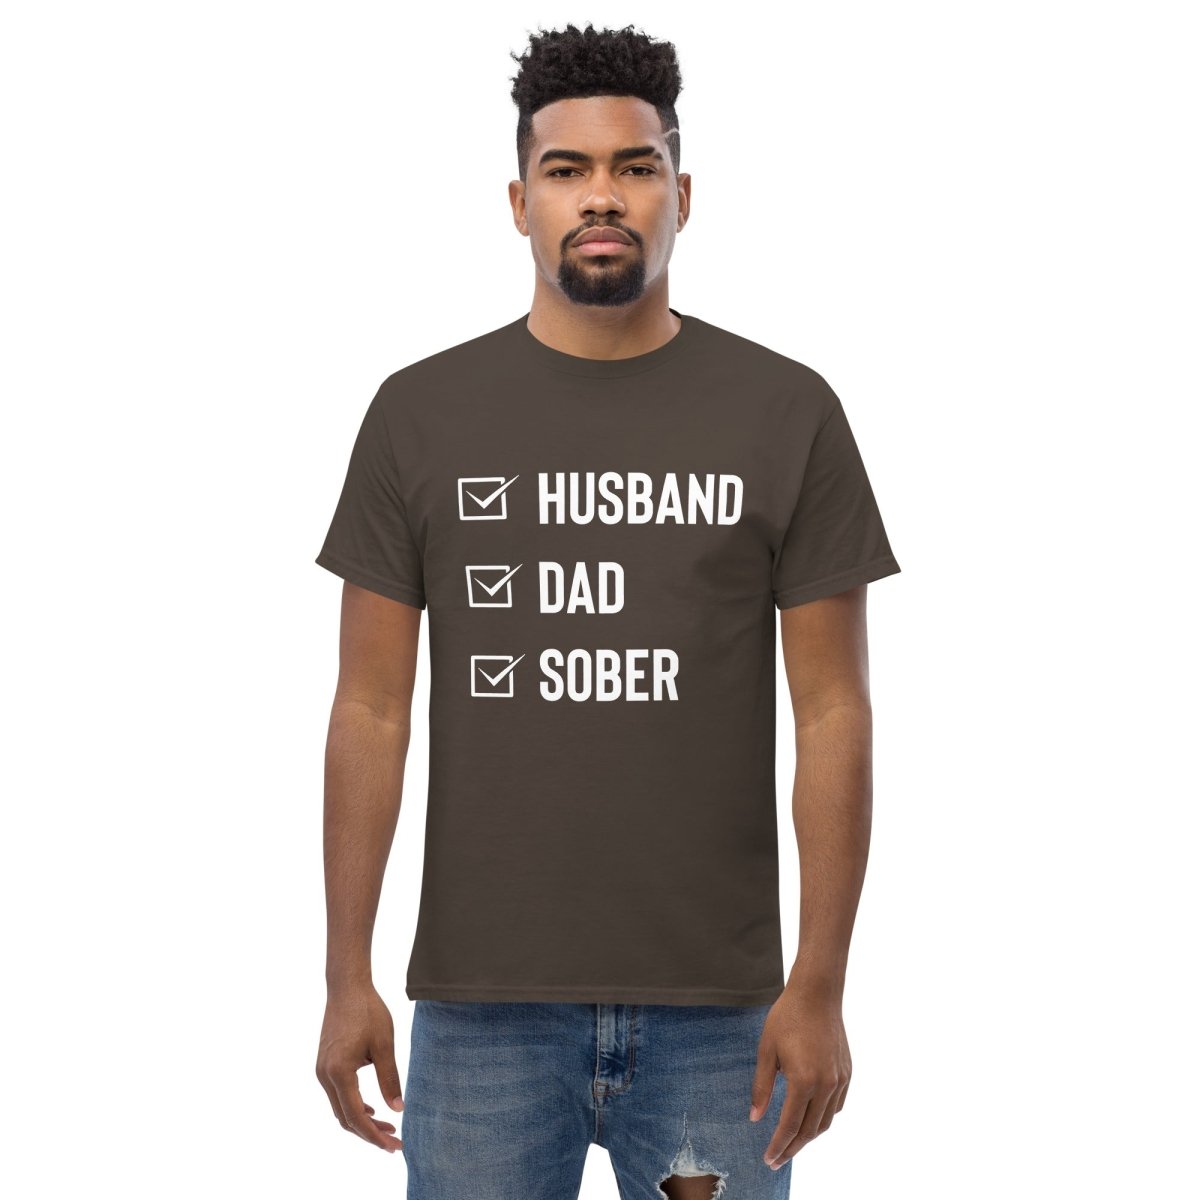 Husband Dad Sober - Men's Classic Tee Celebrating Sober Fatherhood - Clean & Sober